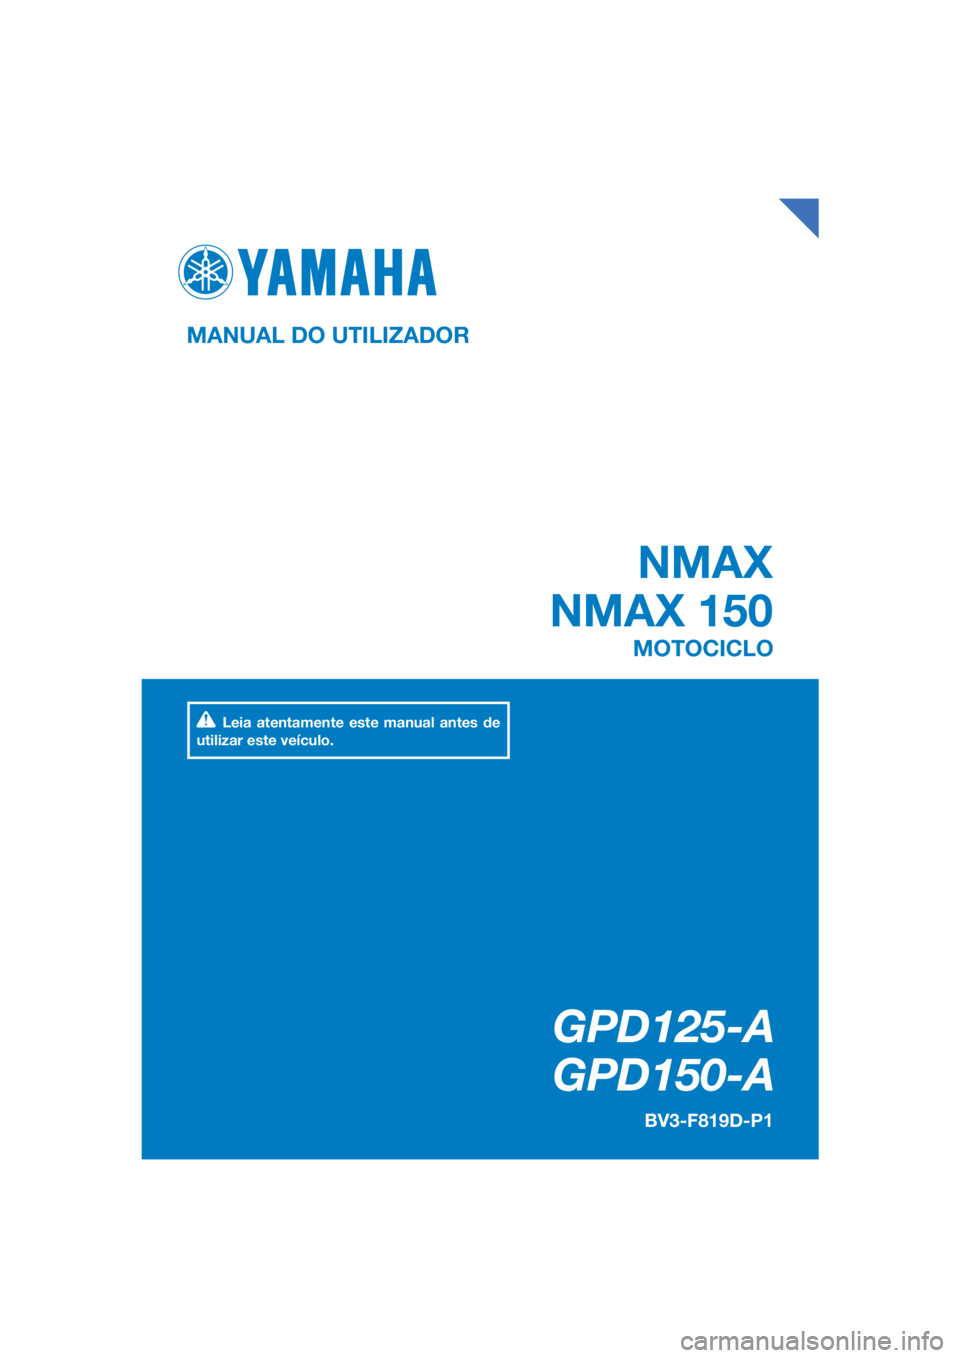 YAMAHA NMAX 150 2019  Manual de utilização (in Portuguese) DIC183
 NMAX
NMAX 150
GPD125-A
   GPD150-A
MANUAL DO UTILIZADOR BV3-F819D-P1
MOTOCICLO
Leia atentamente este manual antes de 
utilizar este veículo.
[Portuguese  (P)] 